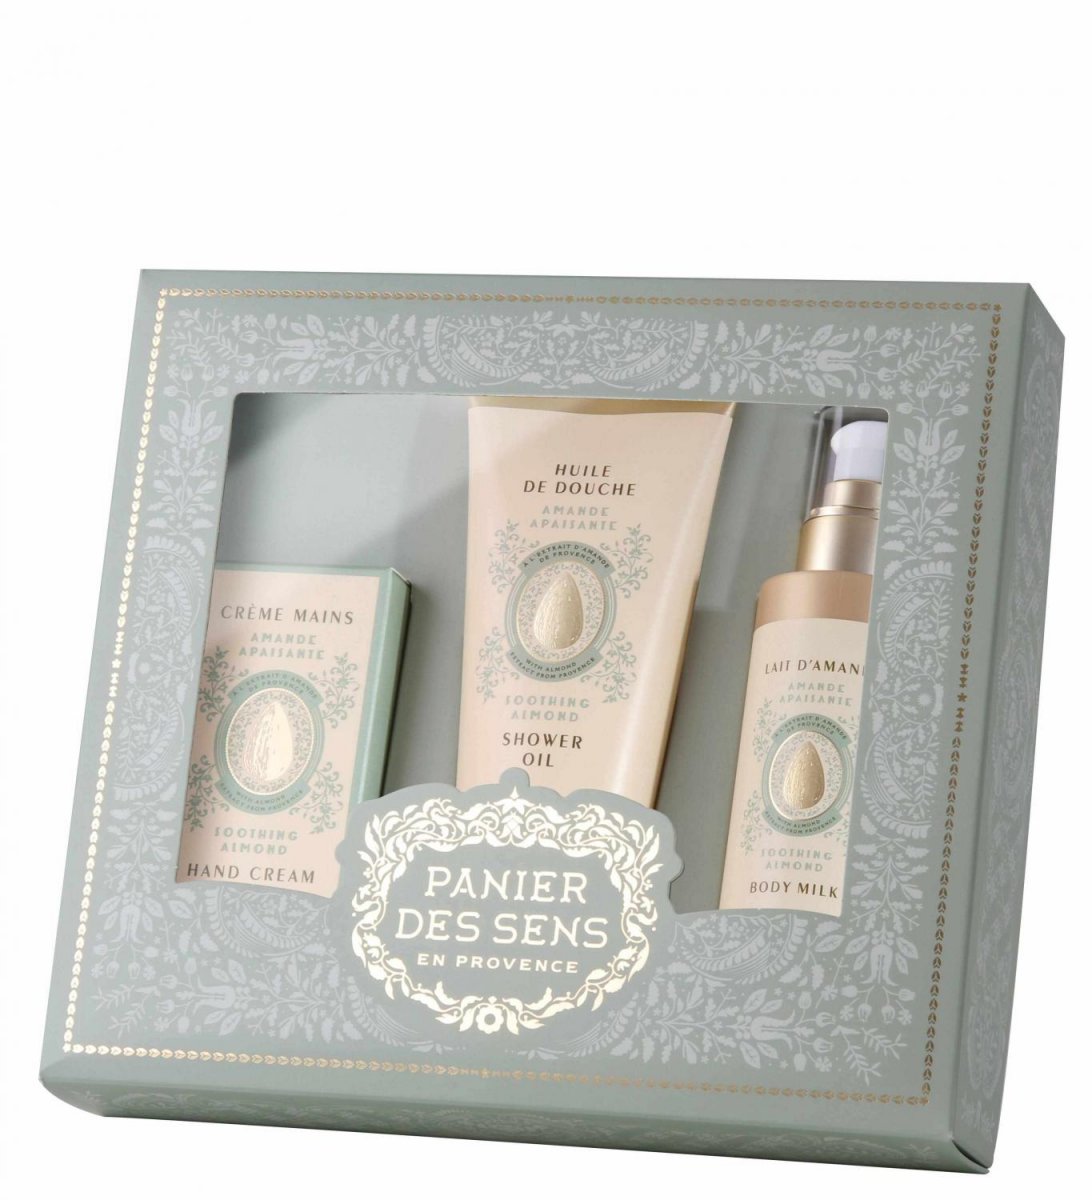 Almond gift set - Panier de Sens/Saponi
439 kr